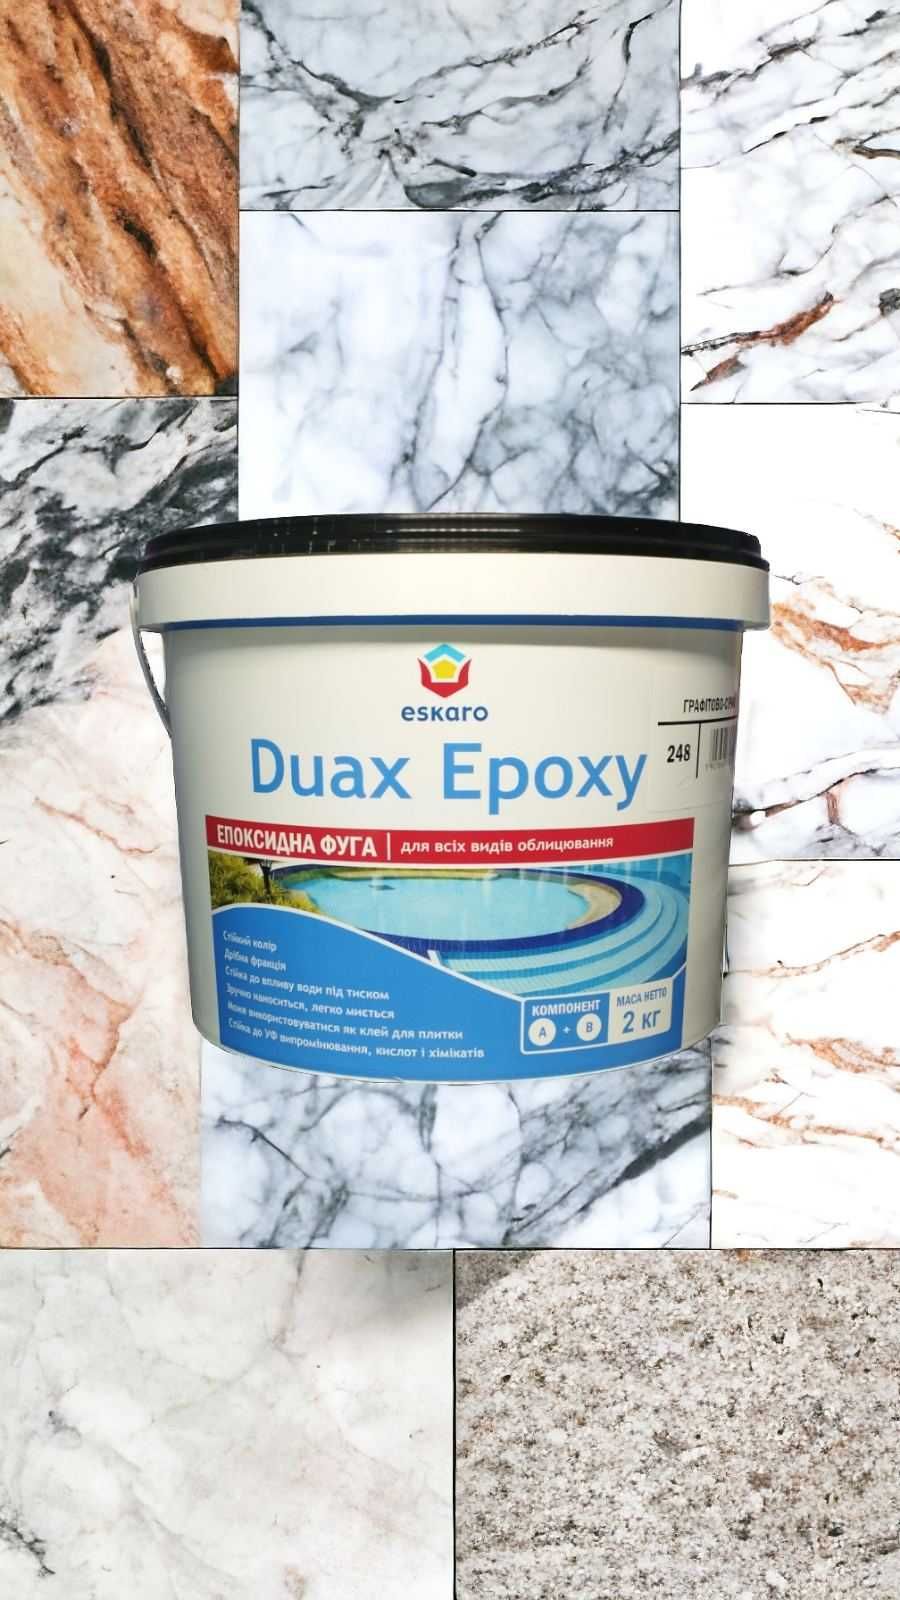 Eskaro Duax Epoxy 2kg